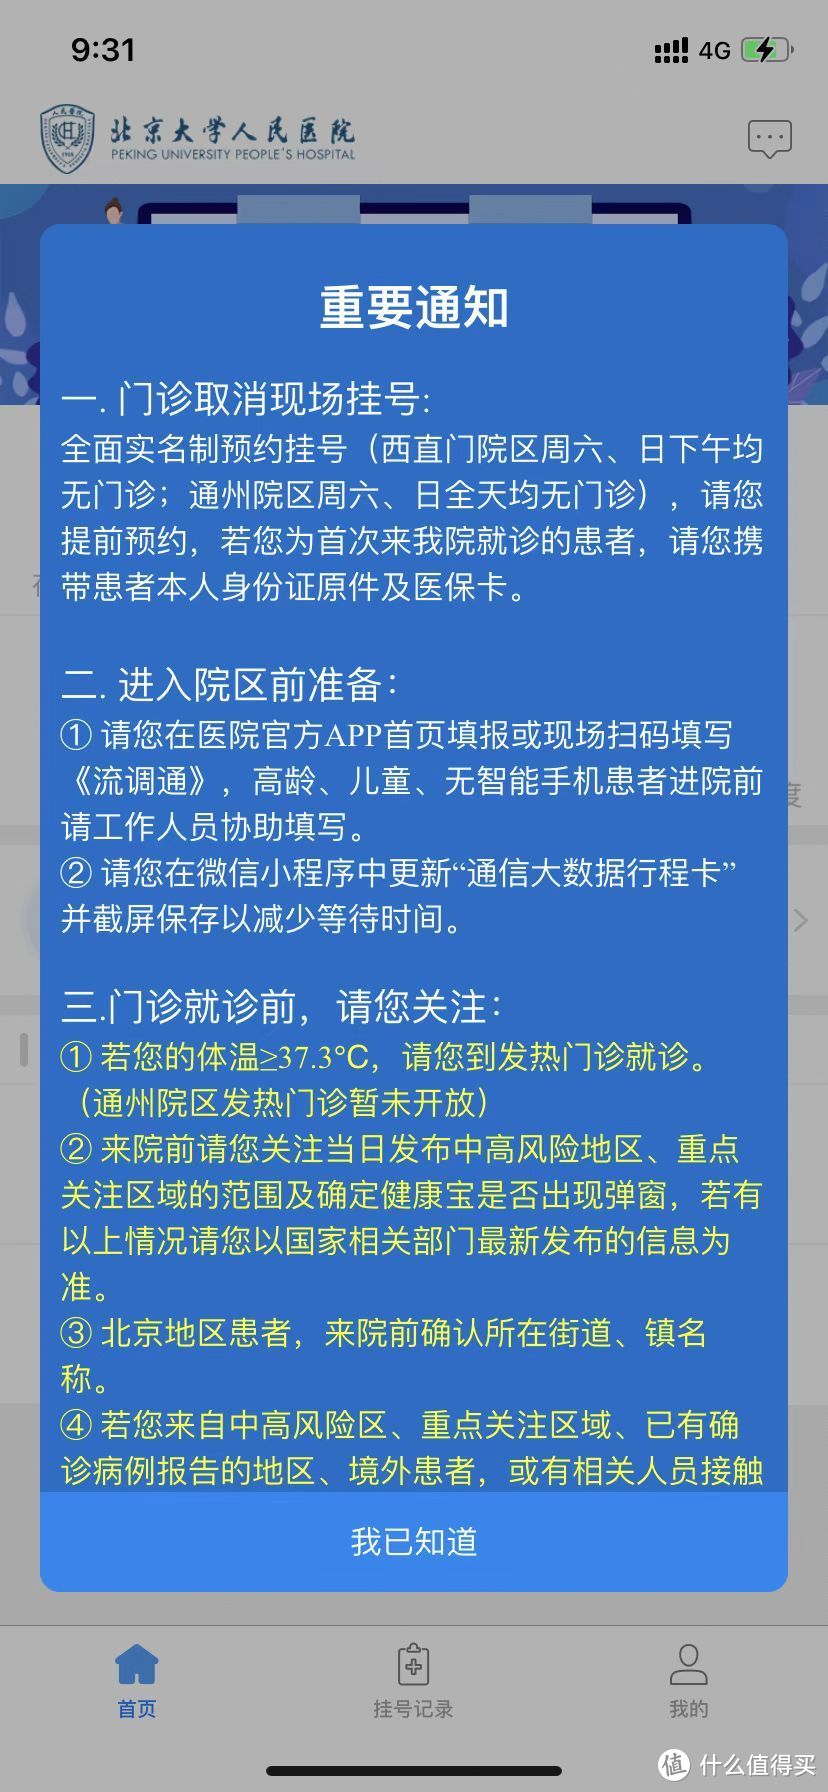 生活攻略 篇一:北京大学人民医院就诊挂号攻略